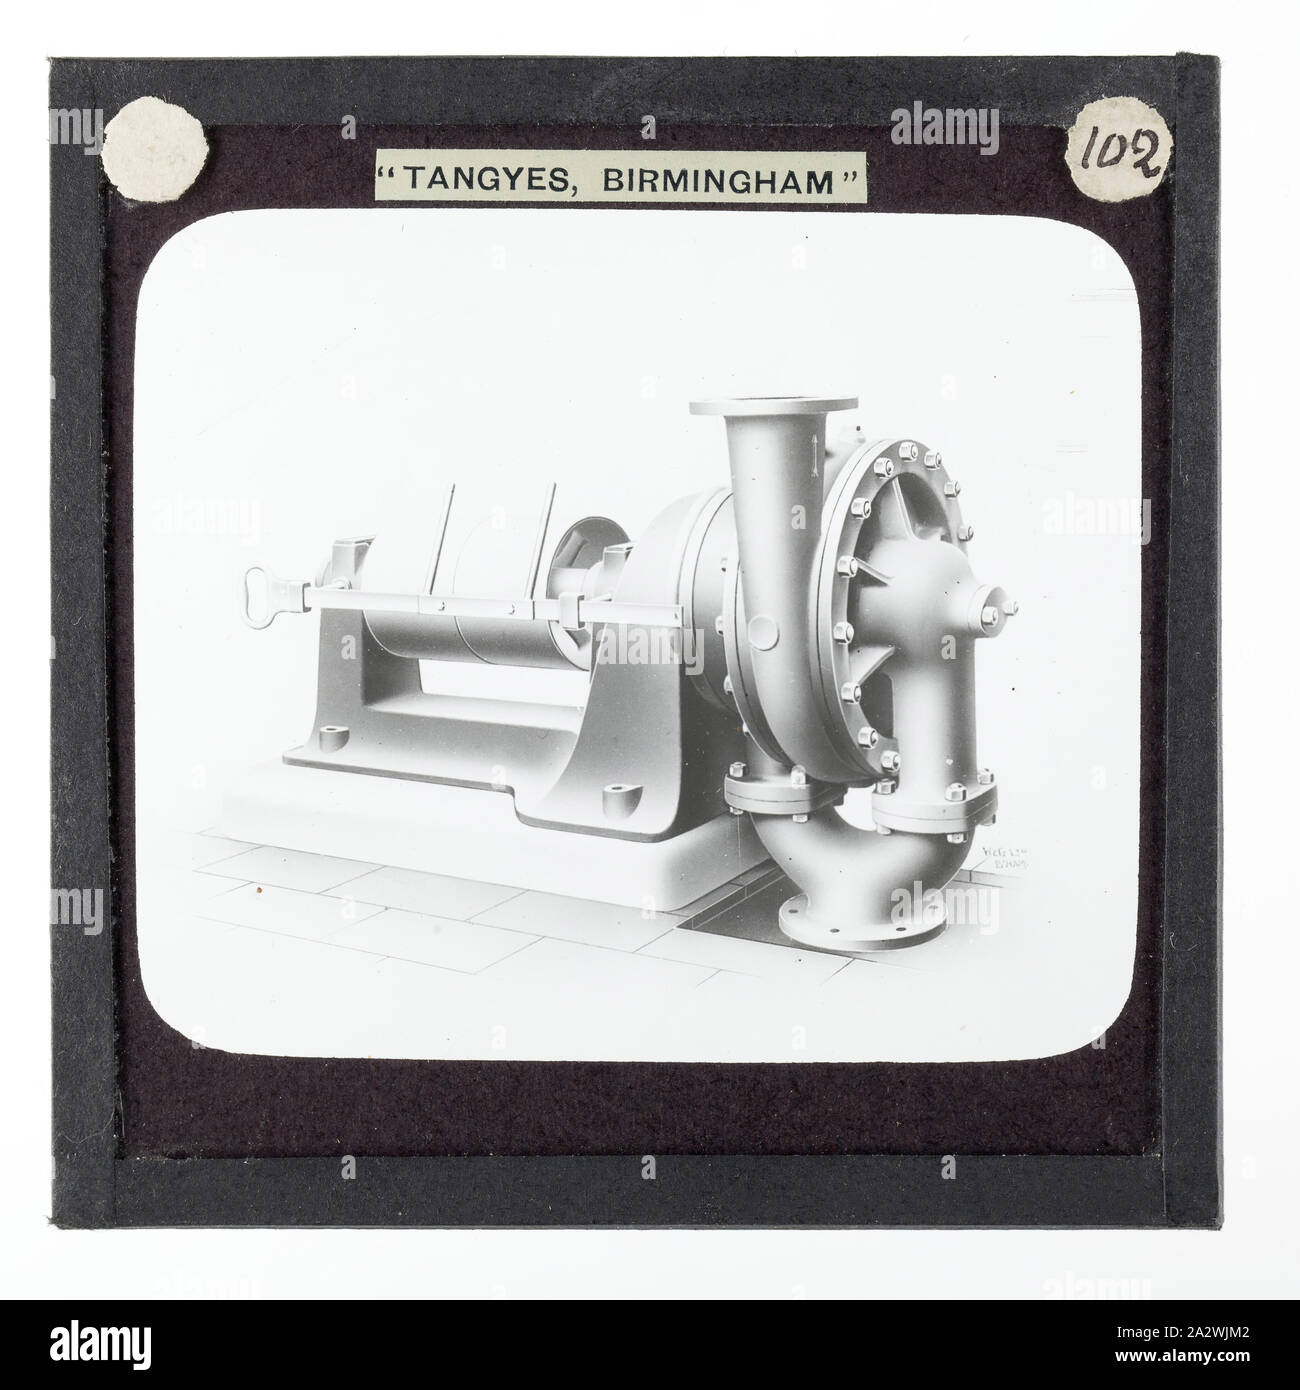 Diapositive - Tangyes Ltd, C Type pompe centrifuge, vers 1910, l'un de 239 diapositives sur verre Verre produits fabriqués par Tangyes ingénieurs limitée de Birmingham, Angleterre. Les images comprennent divers produits tels que les moteurs, pompes centrifuges, pompes hydrauliques, les producteurs de gaz, machines d'essais des matériaux, presses, machines-outils, vérins hydrauliques etc. Tangyes était une entreprise qui a fonctionné de 1857 à 1957. Ils ont produit une grande variété de génie Banque D'Images